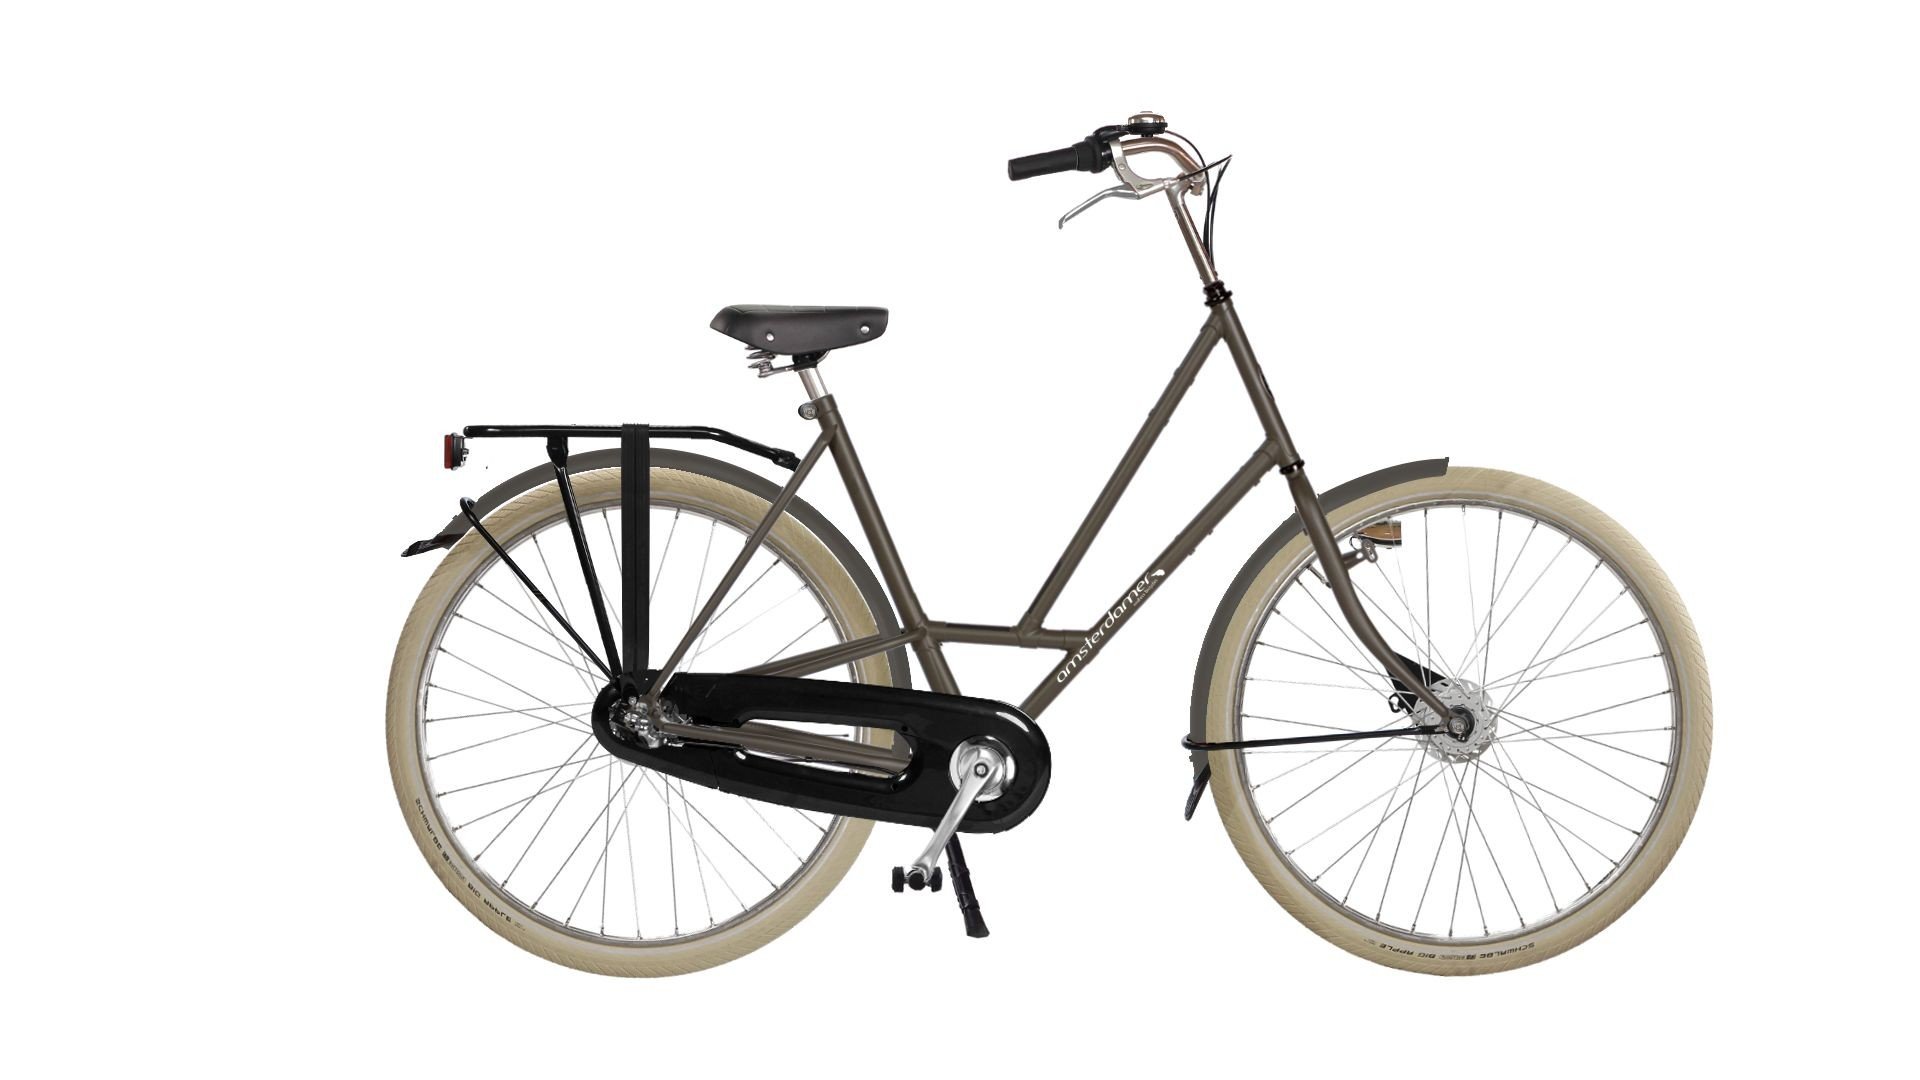 Configurateur du vélo hollandais City Zen Big Apple